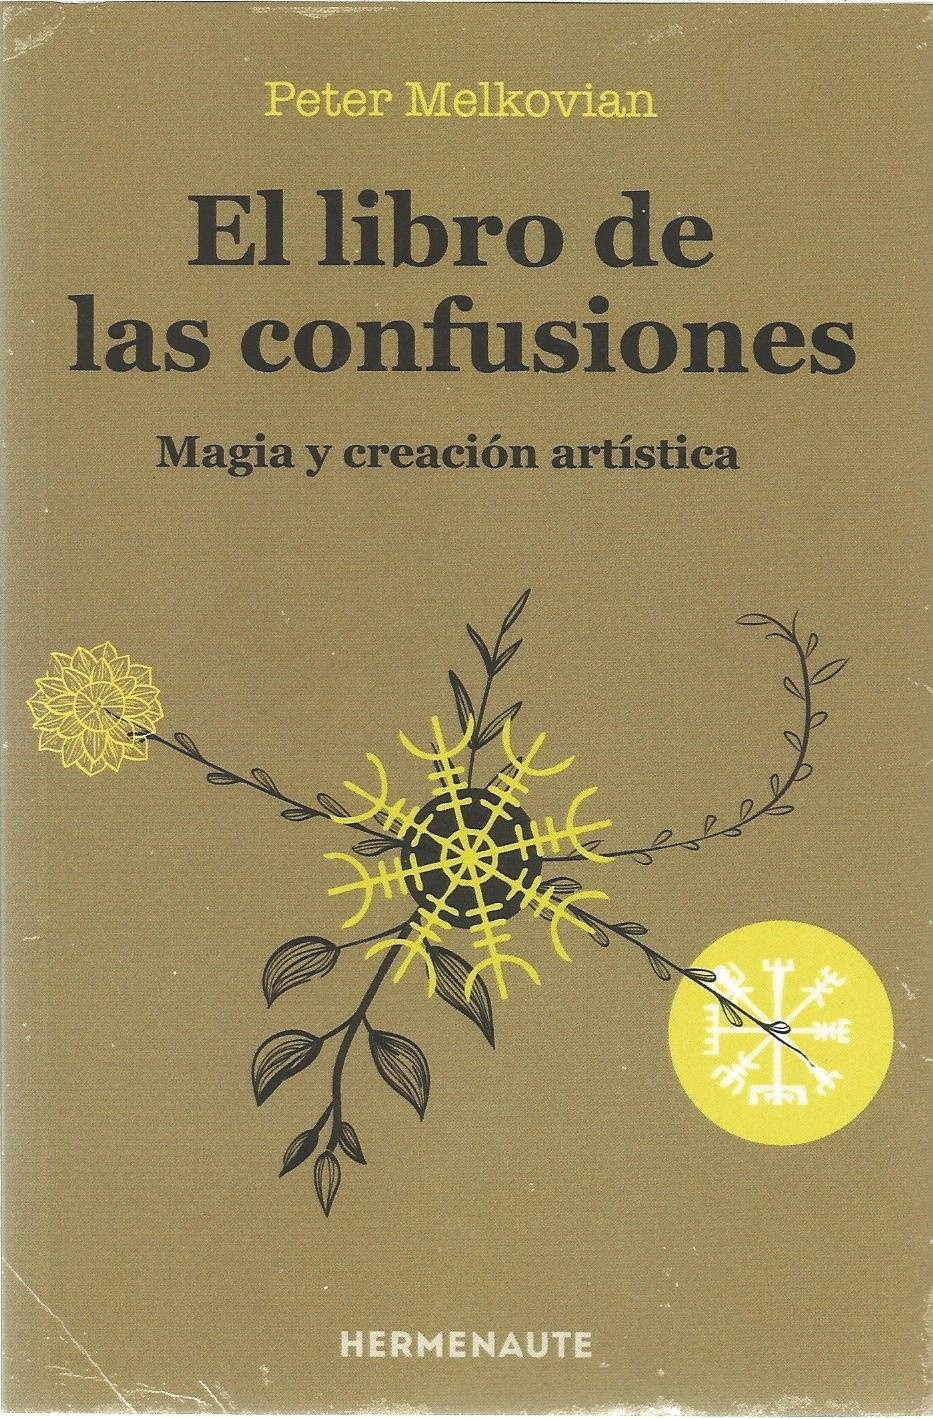 Libro de las confusiones, El "Magia y creación artística". 